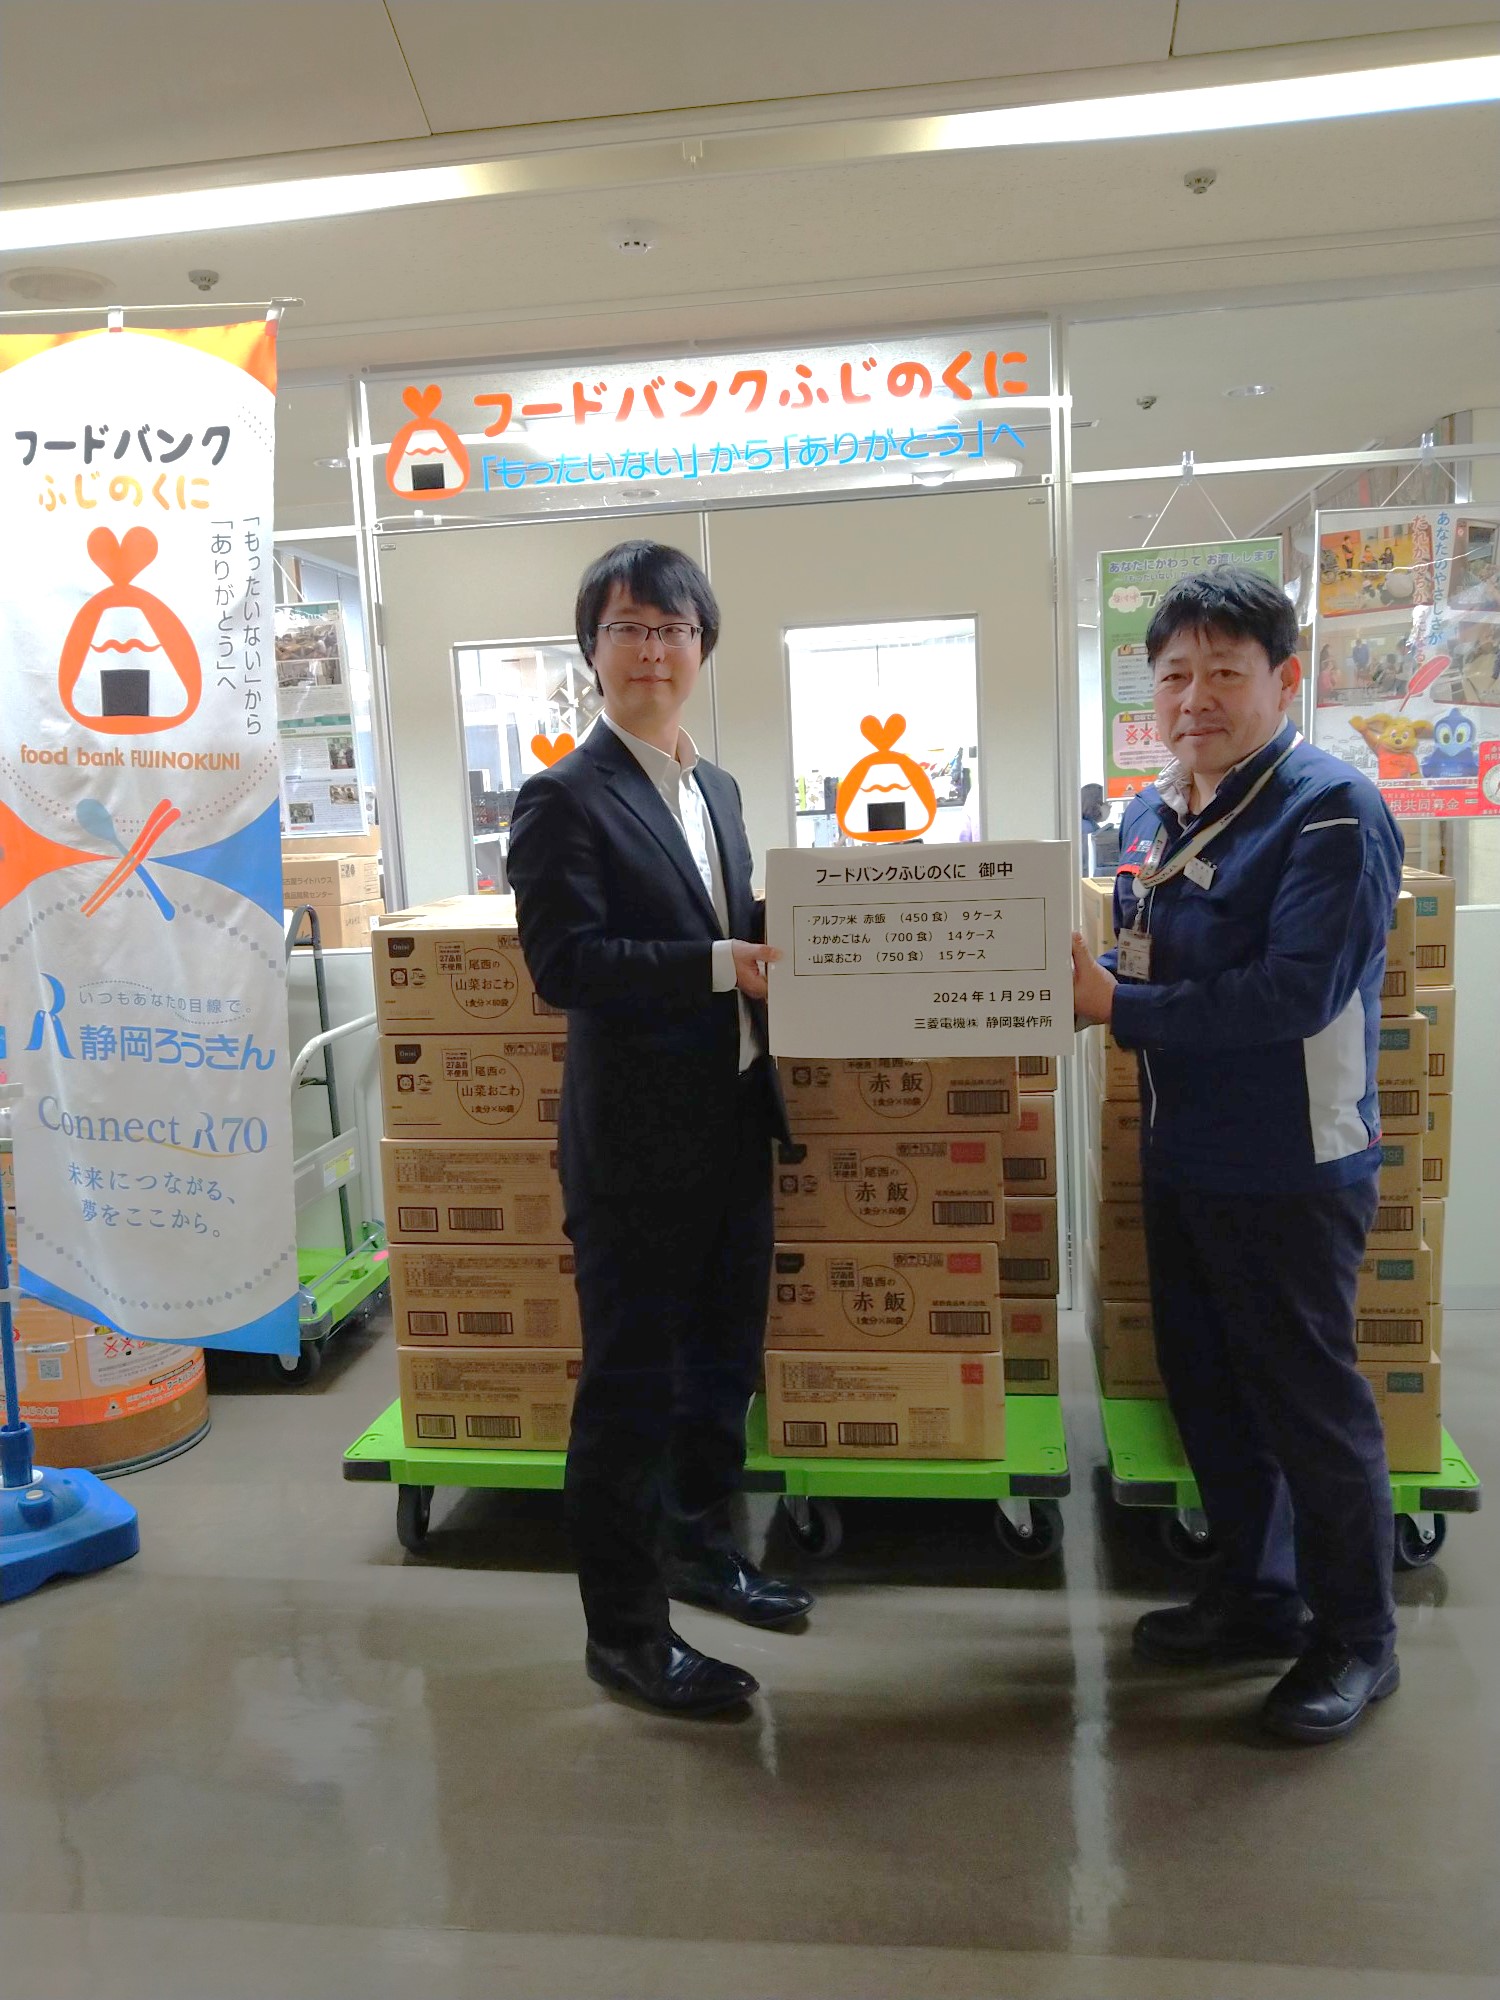 三菱電機株式会社　静岡製作所様より食品を寄贈していただきました。